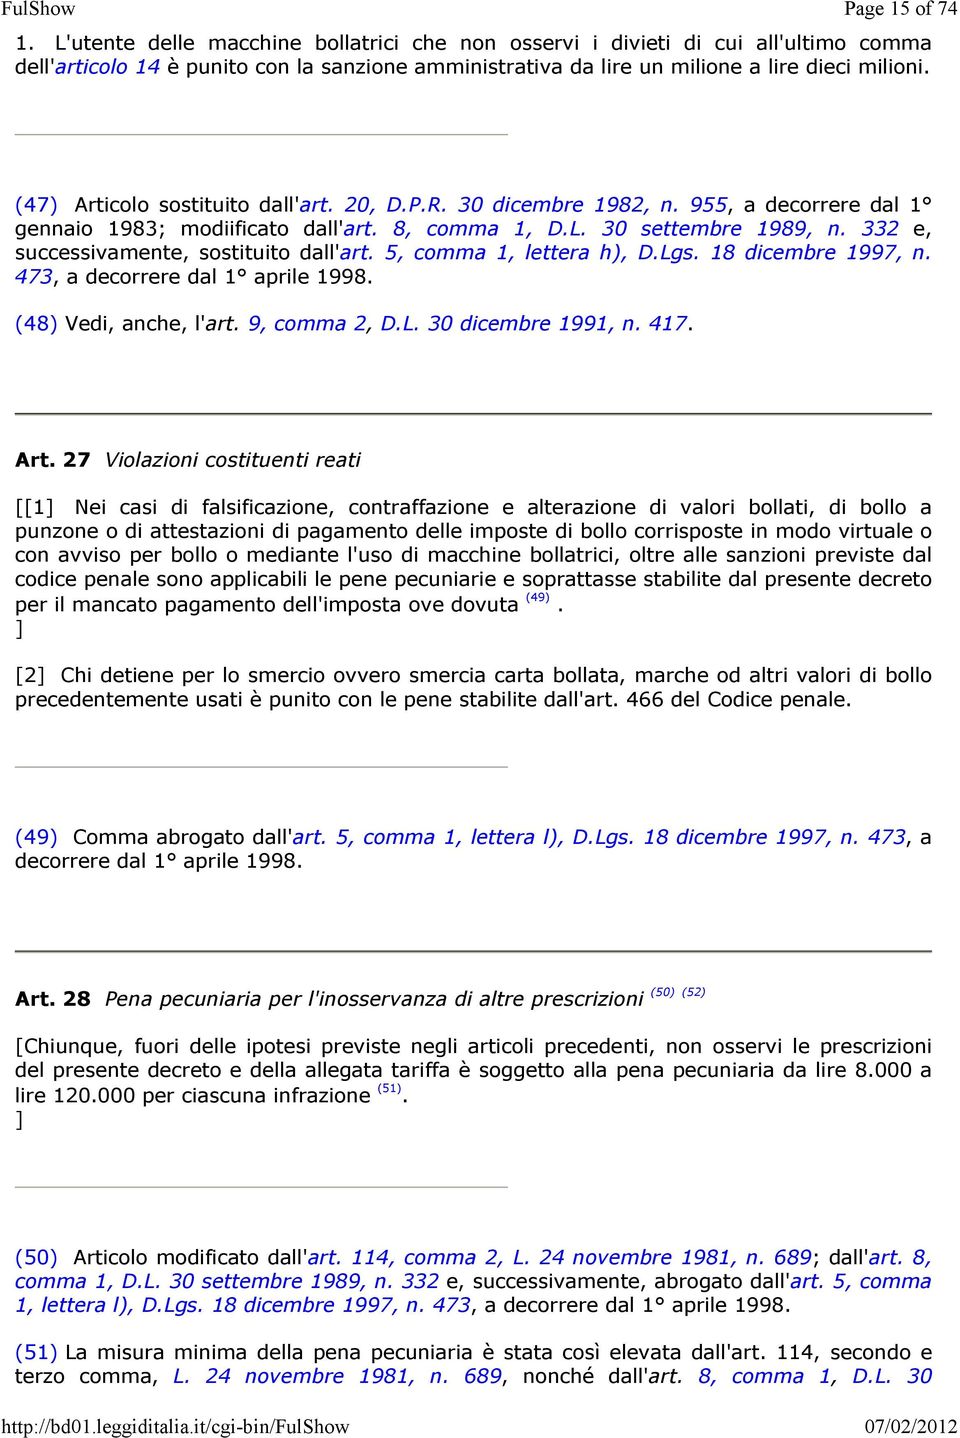 (47) Articolo sostituito dall'art. 20, D.P.R. 30 dicembre 1982, n. 955, a decorrere dal 1 gennaio 1983; modiificato dall'art. 8, comma 1, D.L. 30 settembre 1989, n.